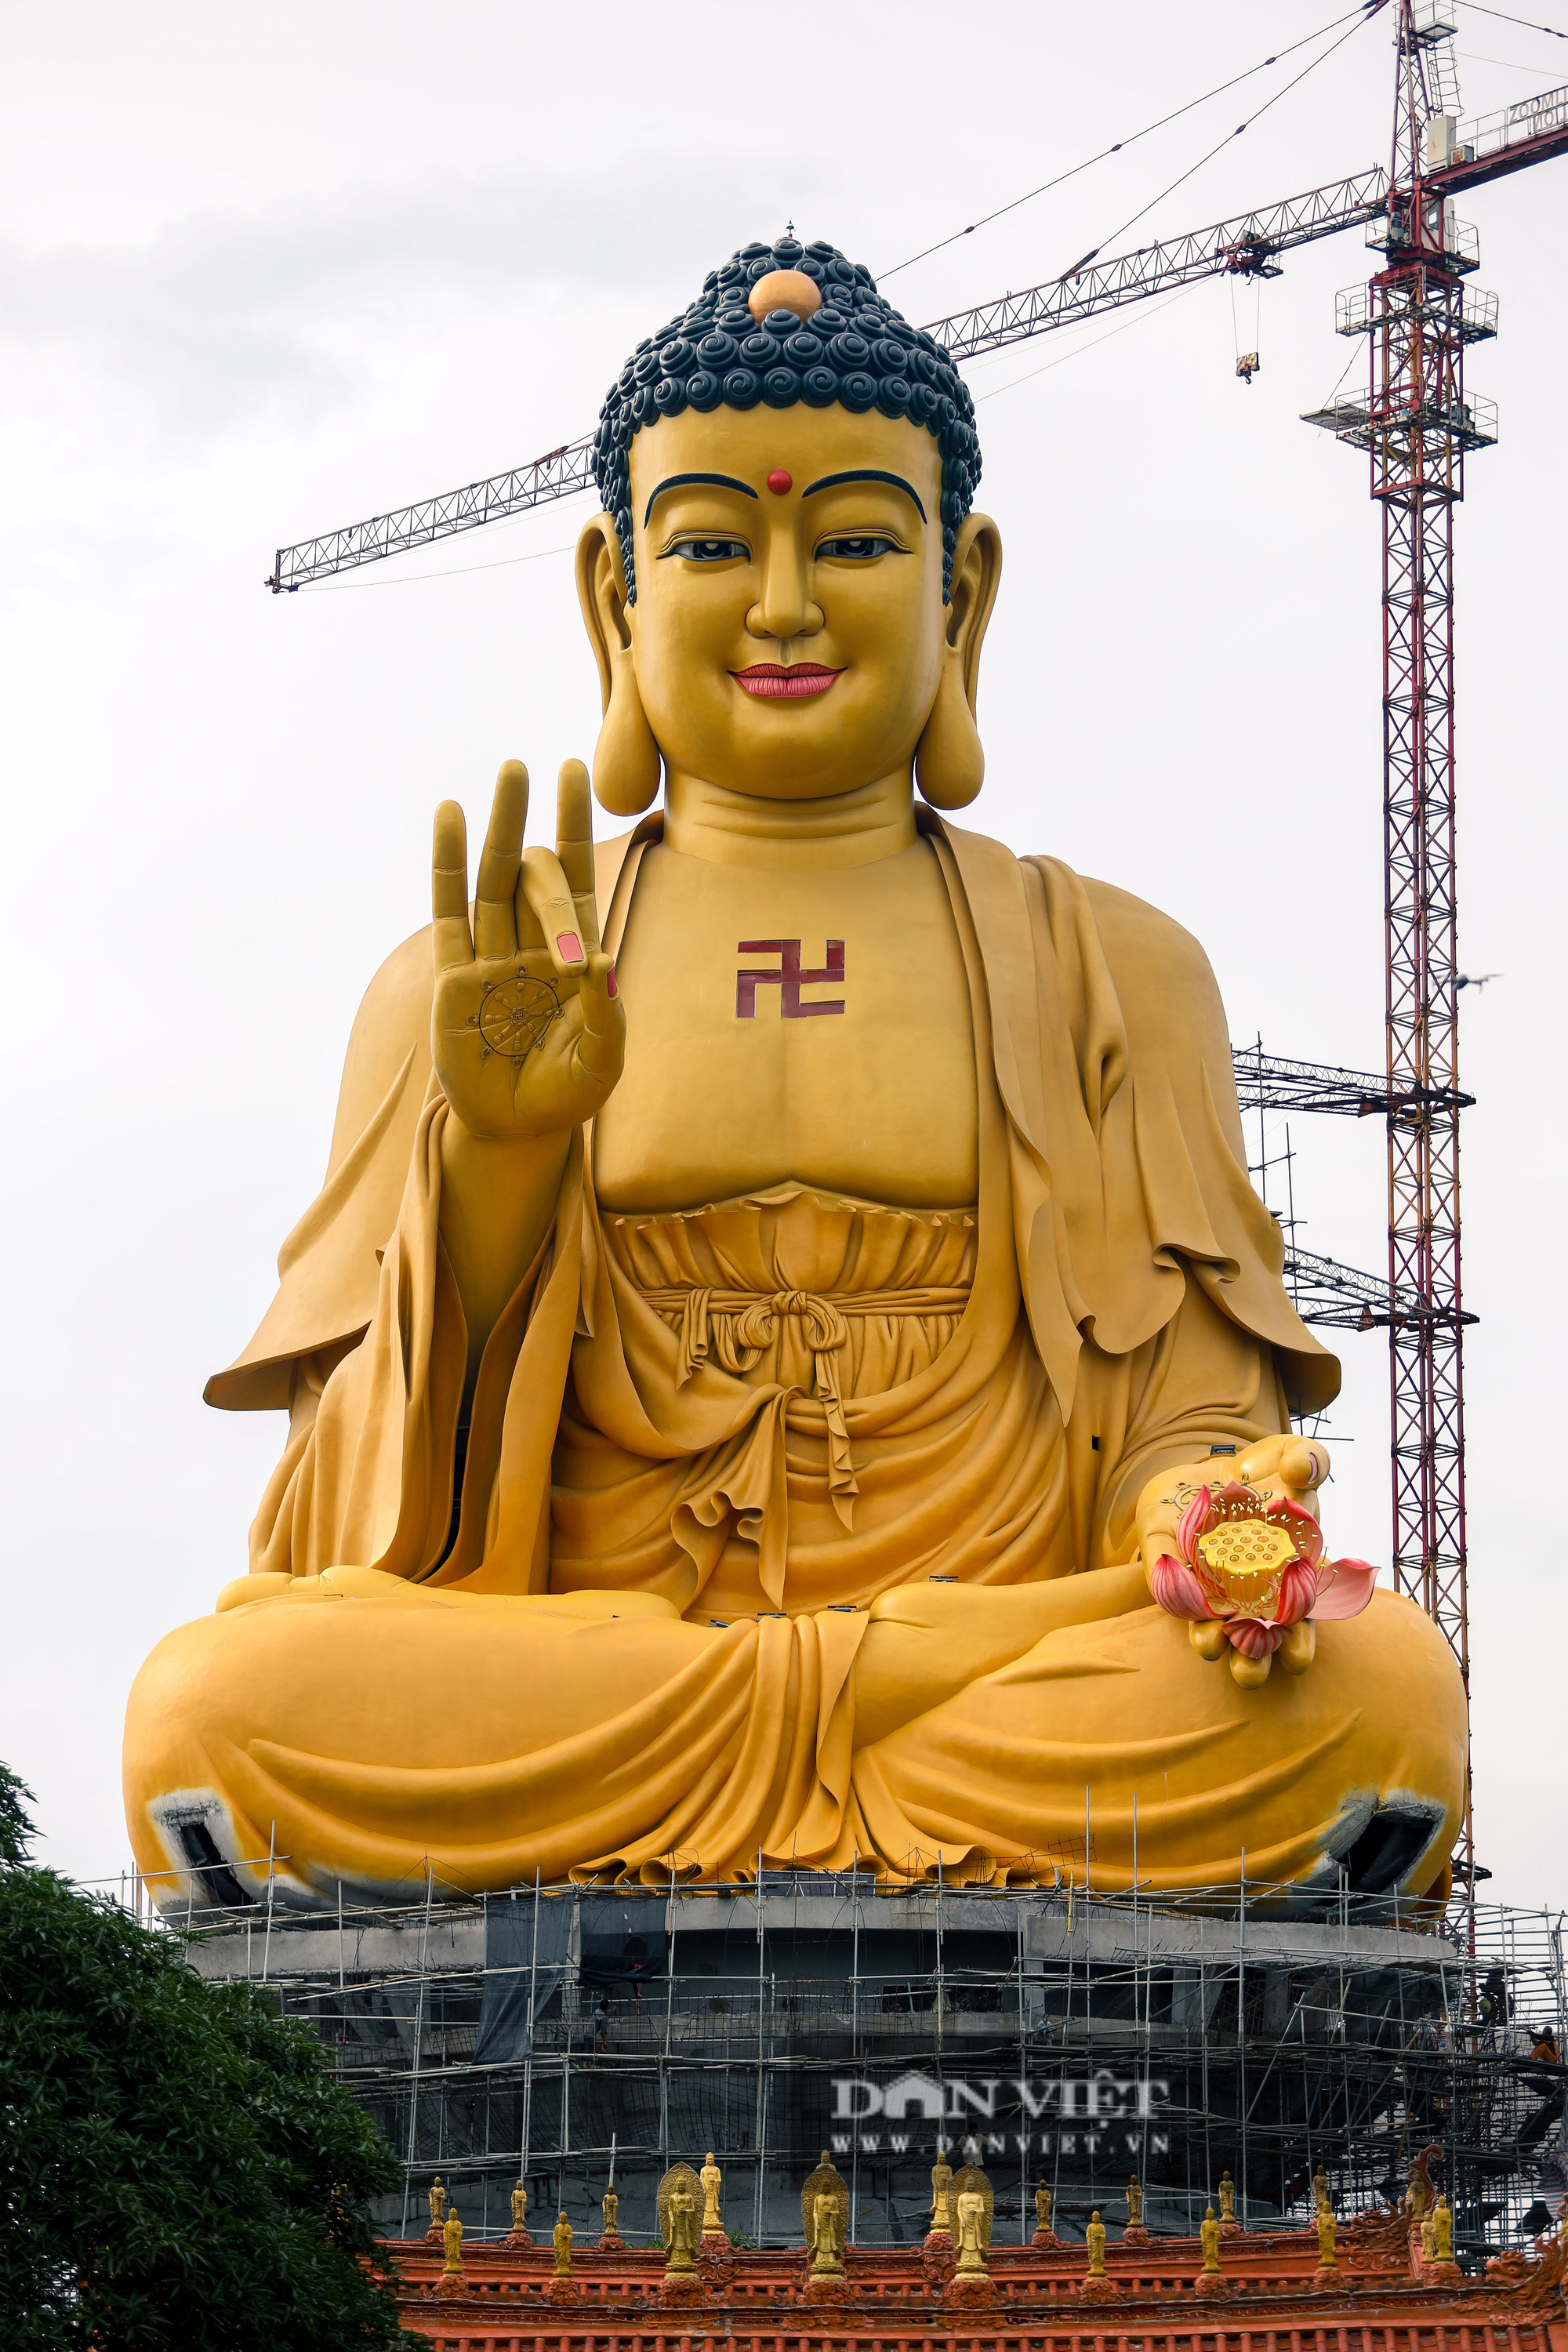 Đại tượng Phật lớn nhất Đông Nam Á là một công trình kiến trúc tuyệt đẹp, là nơi bạn có thể tìm thấy sự bình yên và tinh tấn của tôn giáo Phật giáo. Hãy tận hưởng cảm giác thoải mái và yên bình khi đến thăm công trình này.